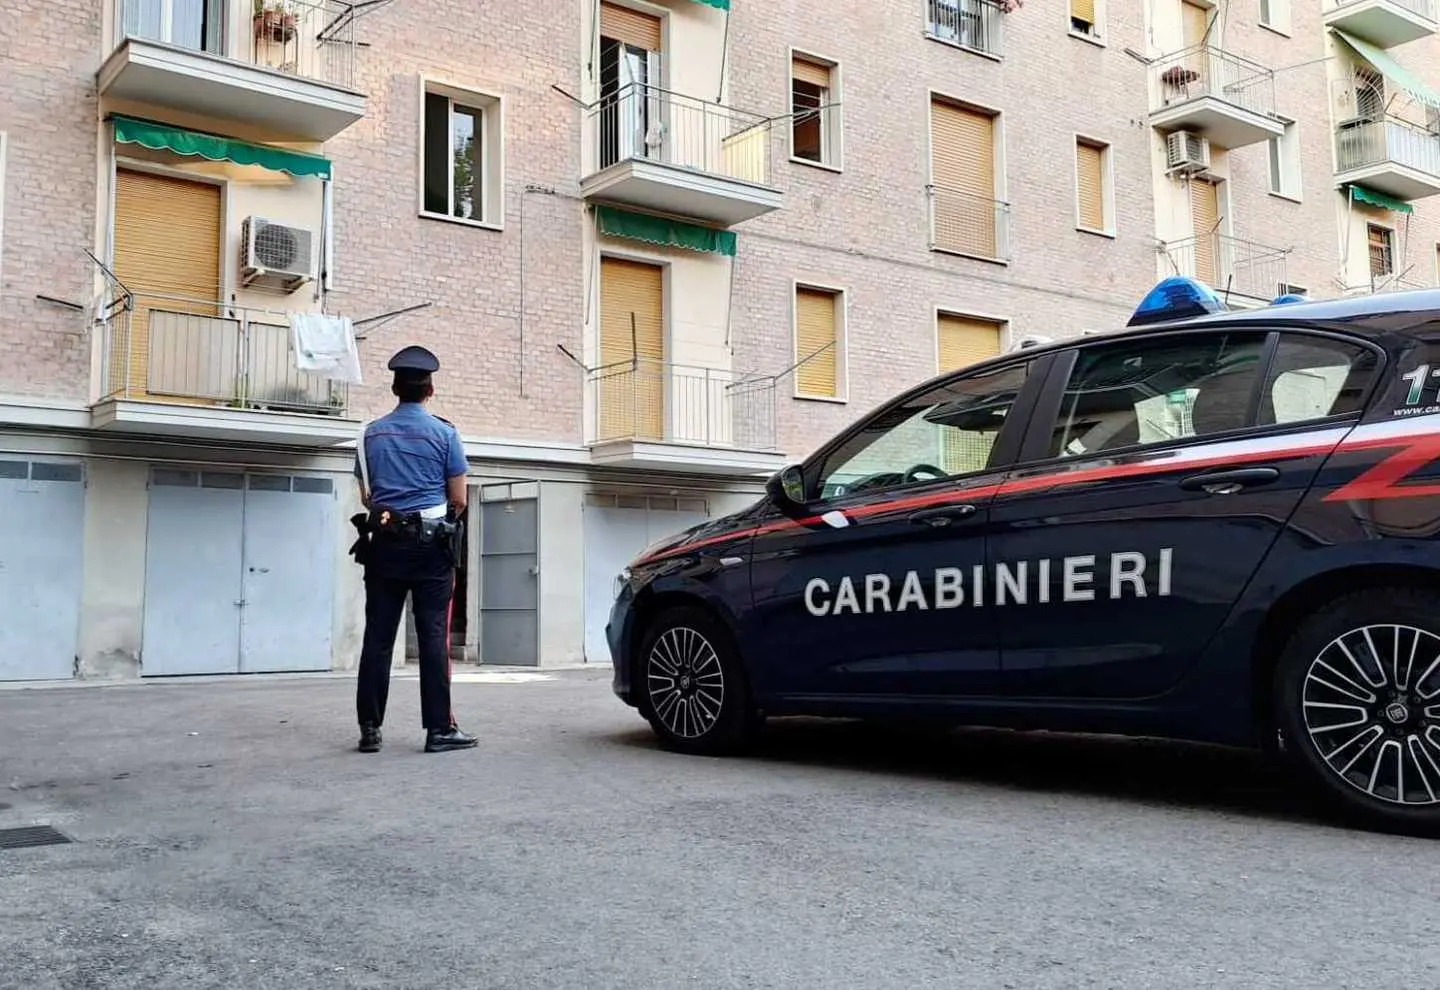 Rubate due auto di lusso da un garage: carabinieri seguono gps